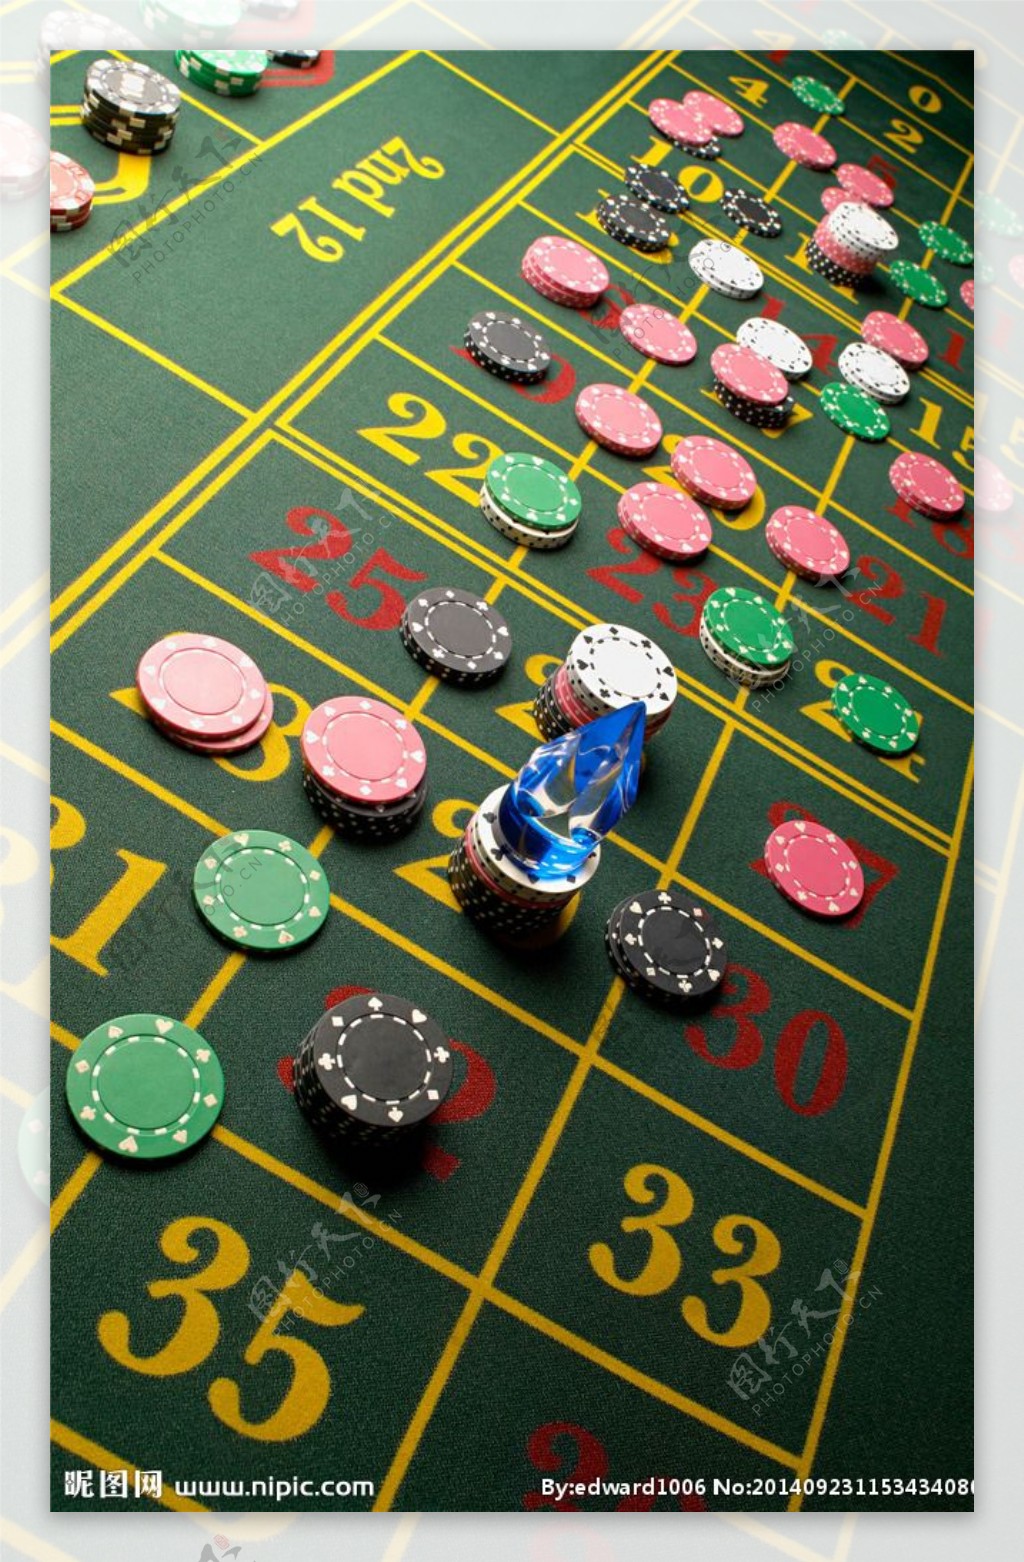 图片素材 : 手, 玩, 地点, 使用, 背景, 表格, 赌场, 赌博, 运气, 赢得, 利润, 基金, 轮盘赌, 游戏银行, jeton ...